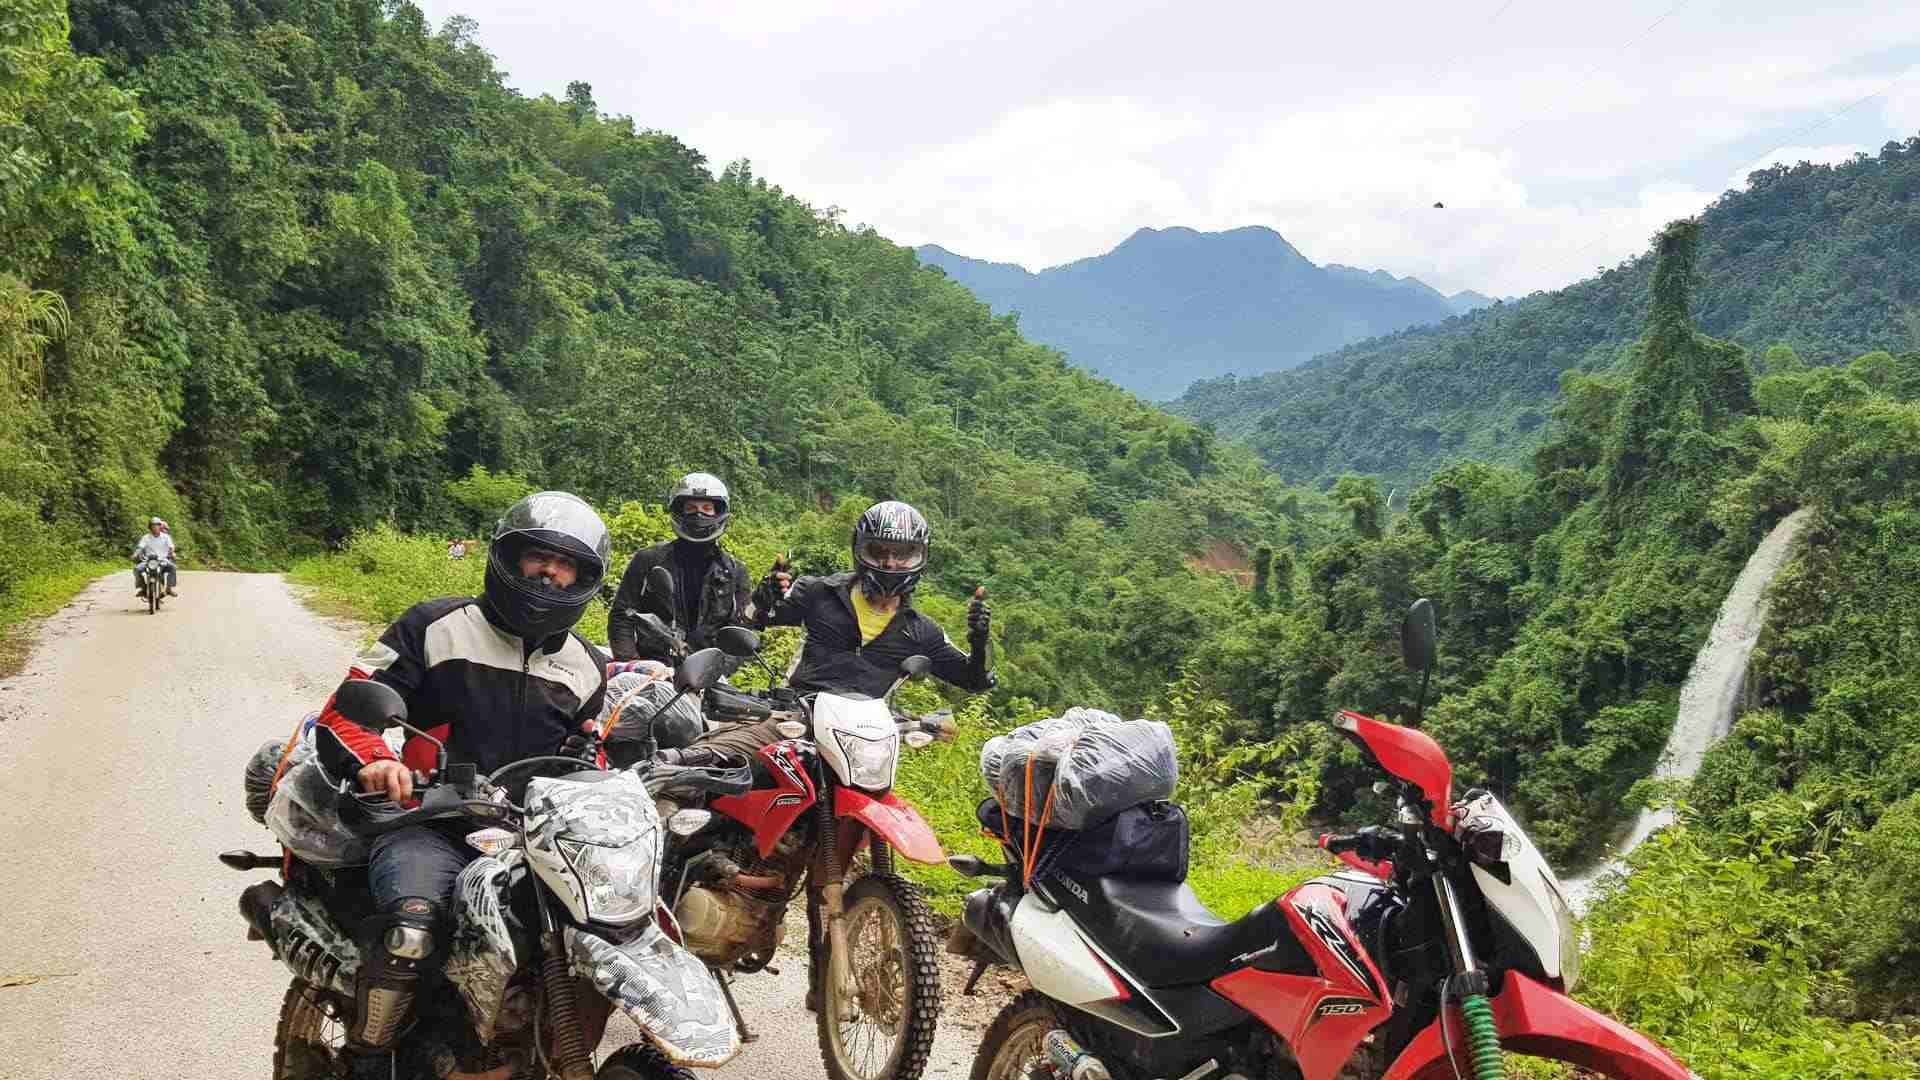 PHU YEN MOTORCYCLE TOUR TO MU CANG CHAI